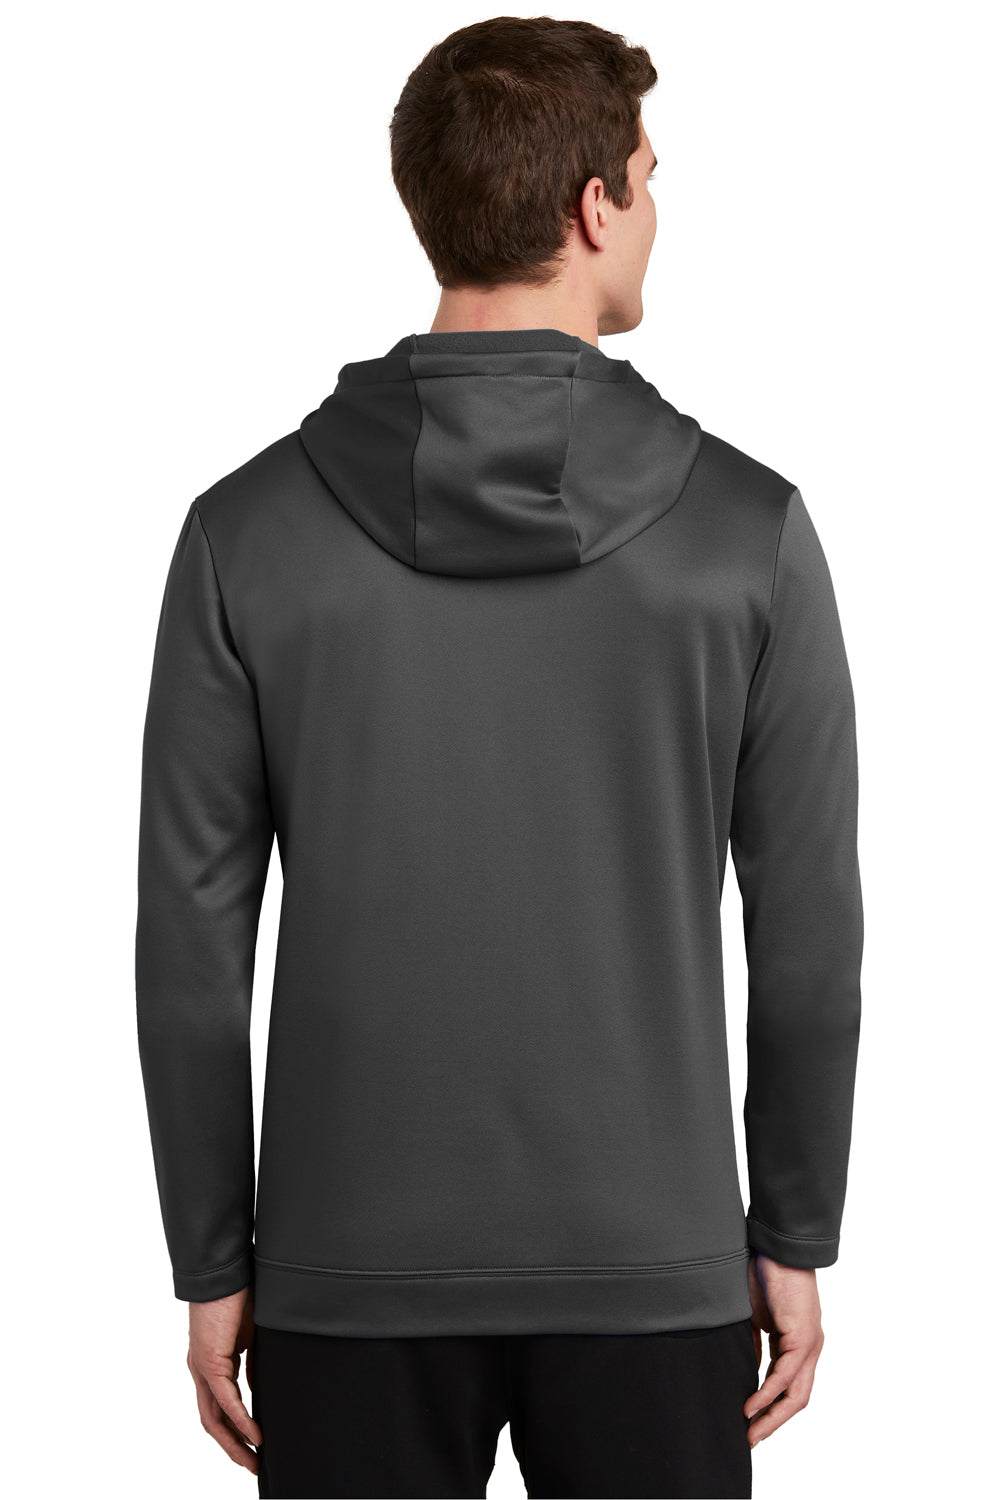 Nike NKAH6259 Mens Therma-Fit Moisture Wicking Fleece Full Zip Hooded Sweatshirt Hoodie Anthracite Grey Model Back